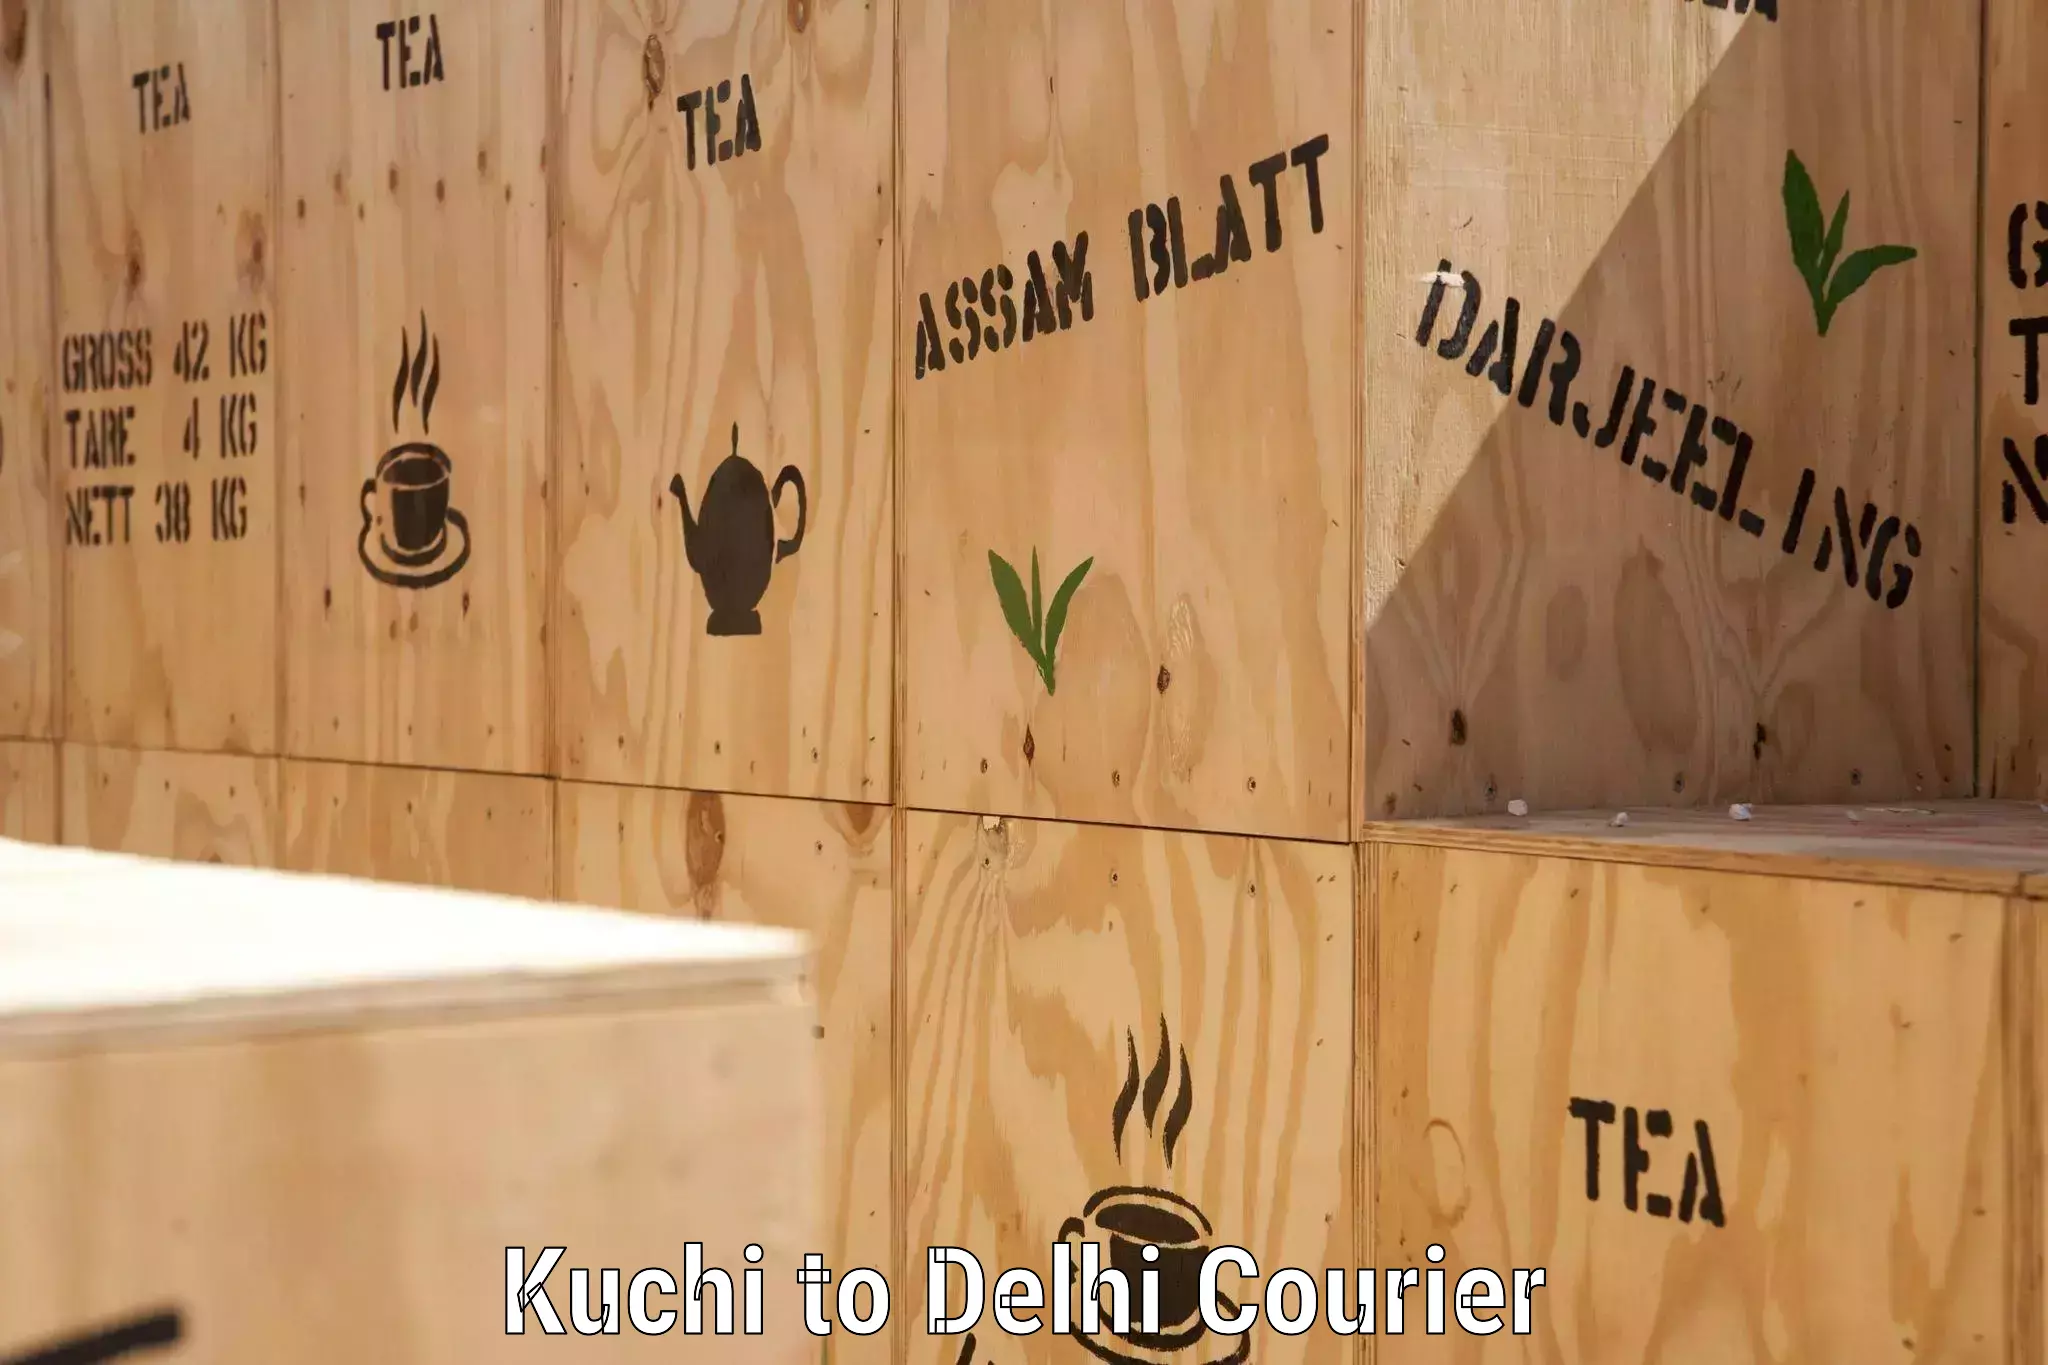 Customer-centric shipping Kuchi to Subhash Nagar